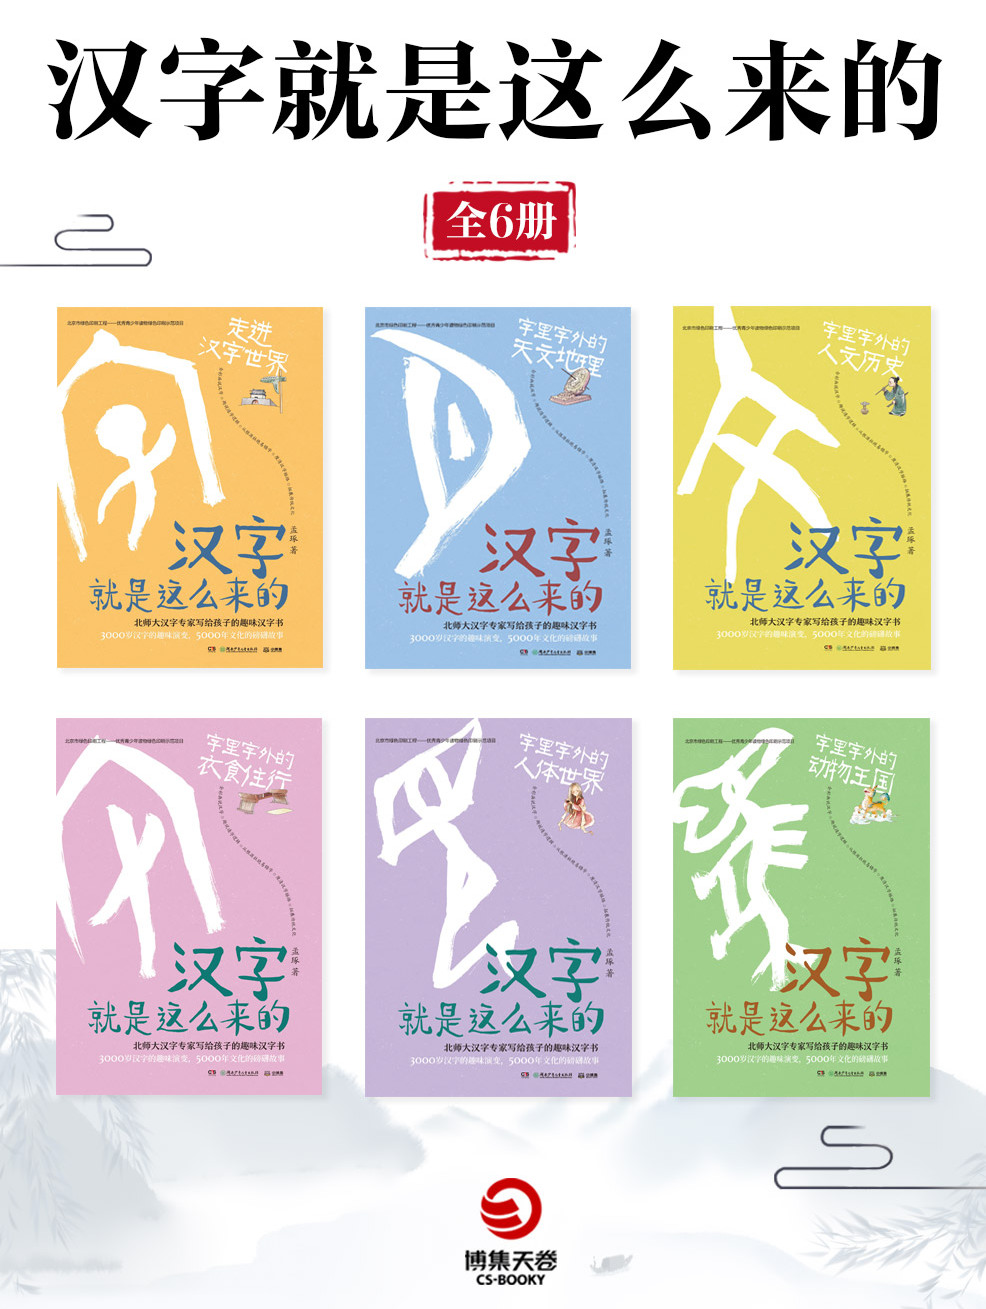 汉字就是这么来的 全6册 全文阅读 汉字就是这么来的 全6册 免费阅读 百度阅读